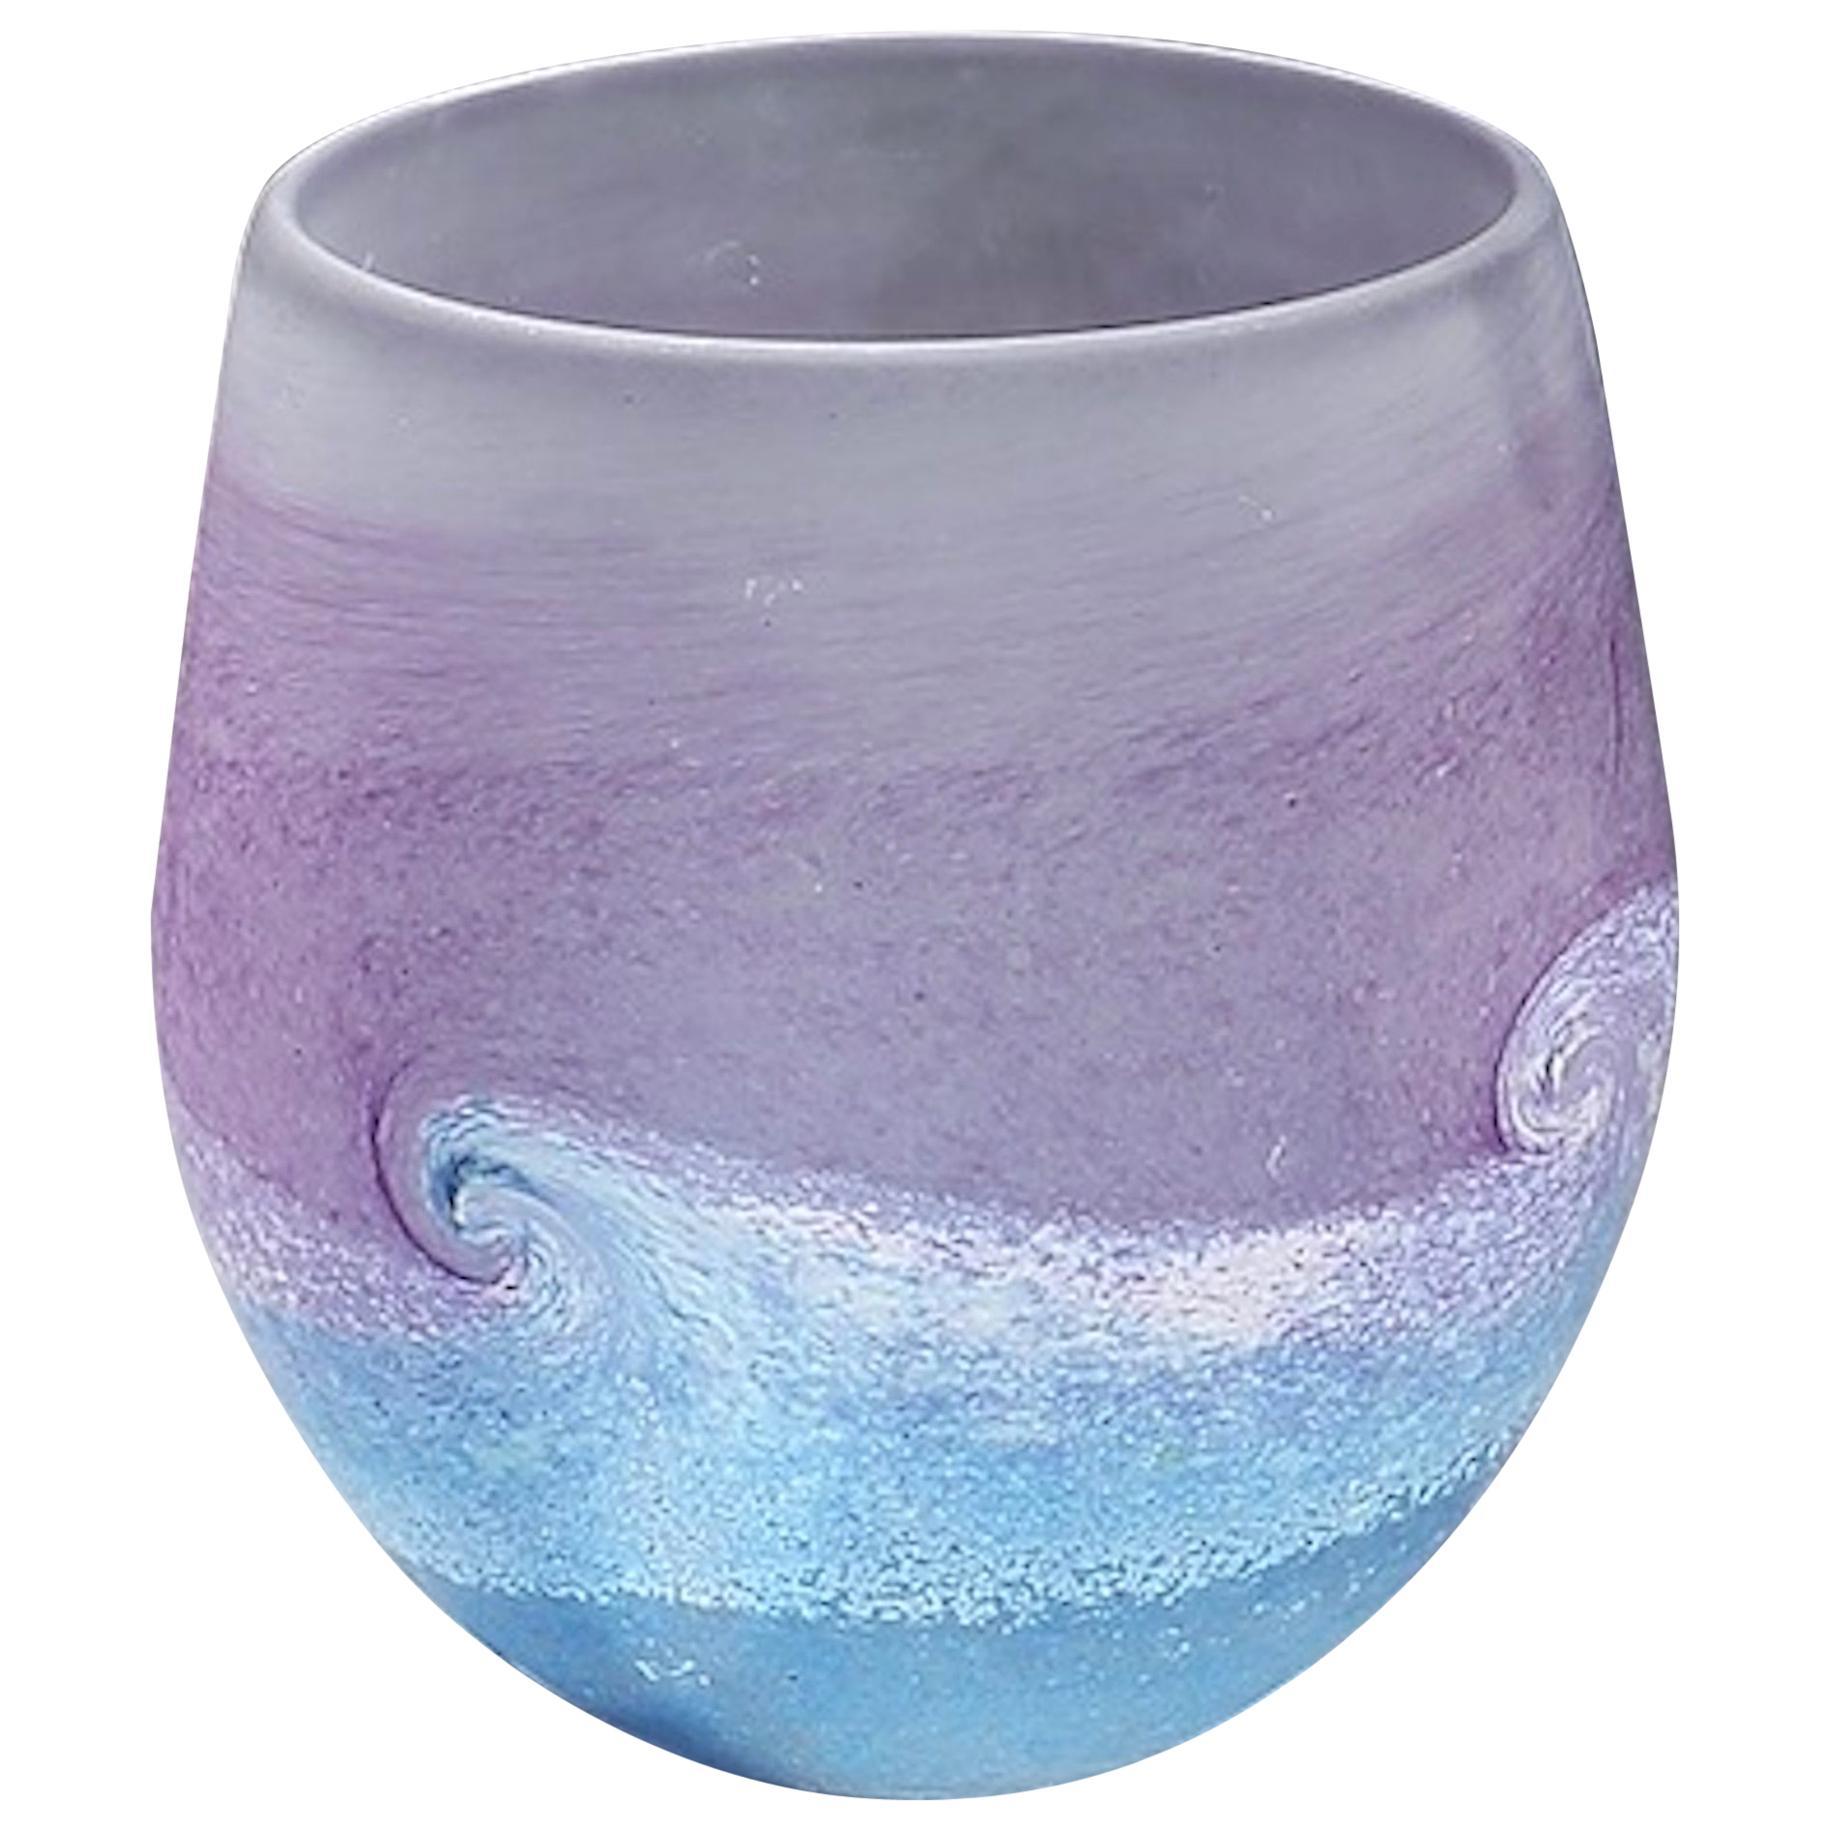 Vase Wave Seascape bleu violet blanc de Norman Stuart Clarke, 1997